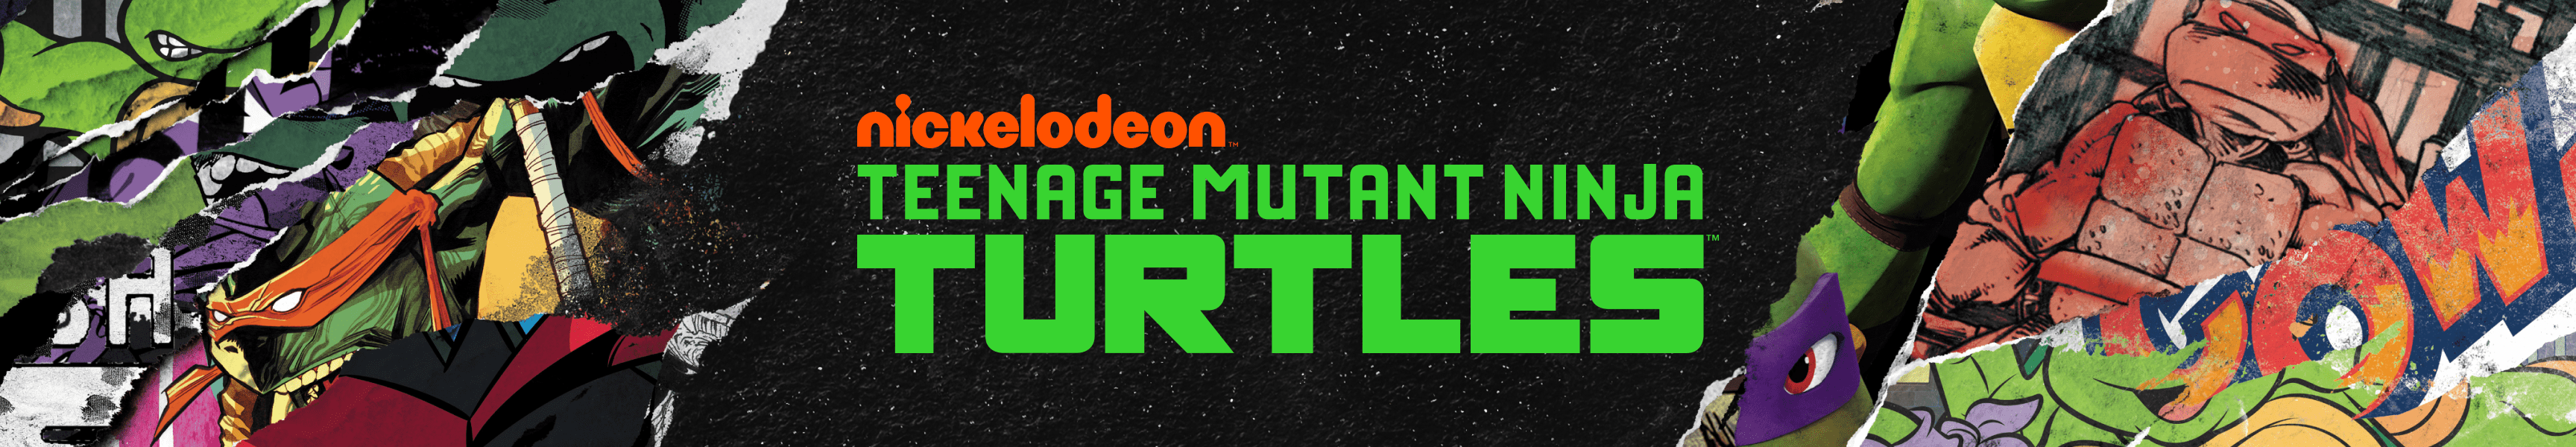 Teenage Mutant Ninja Turtles Gorras